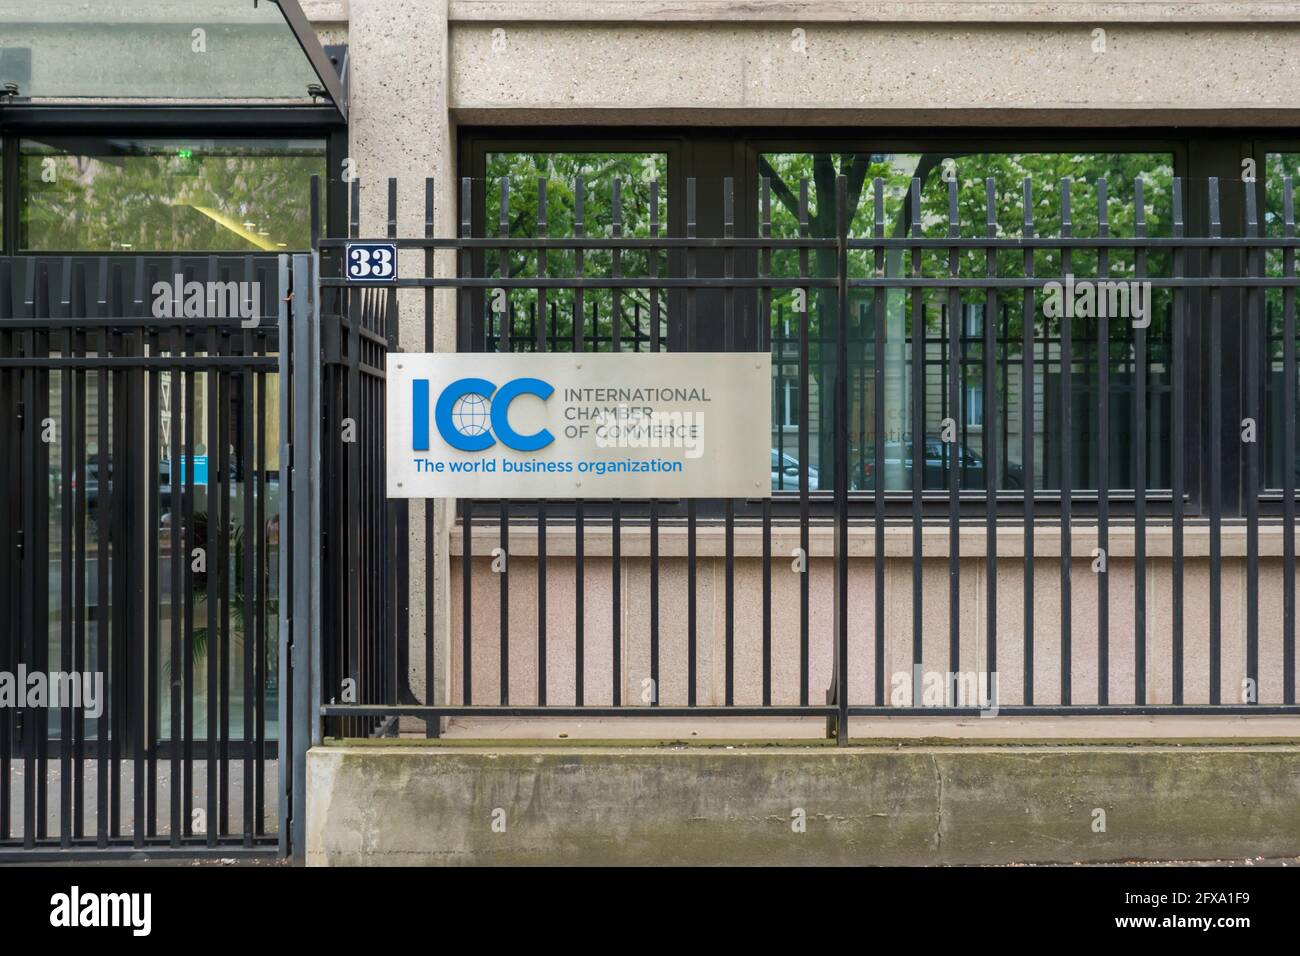 ICC Camera di Commercio Internazionale Front Store facciata del Negozio francese con Logo Signage a le lude, Francia 20.5.2021 ICC Camera Internazionale di co Foto Stock